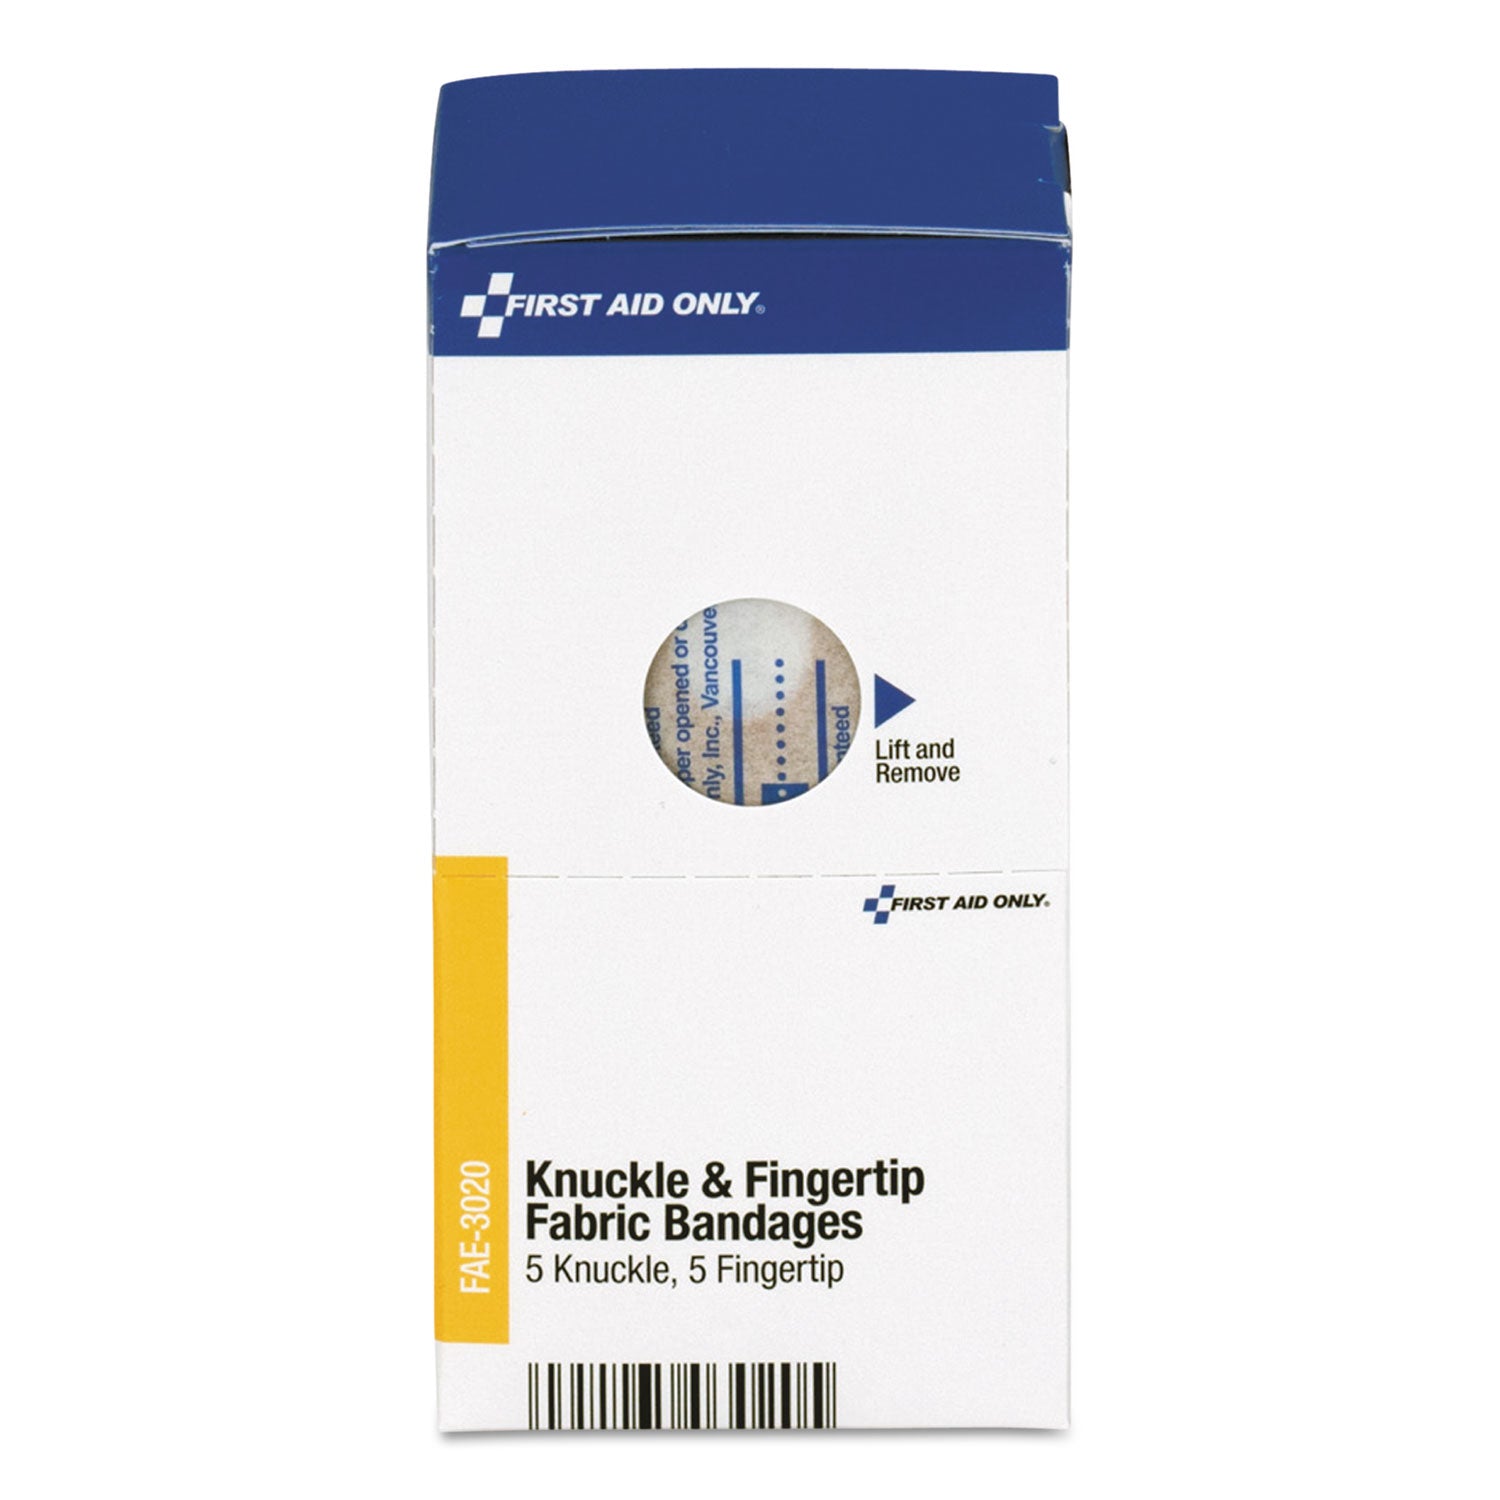 Knuckle and Fingertip Bandages, Sterilized, 5 Knuckle, 5 Fingertip, 10/Box - 